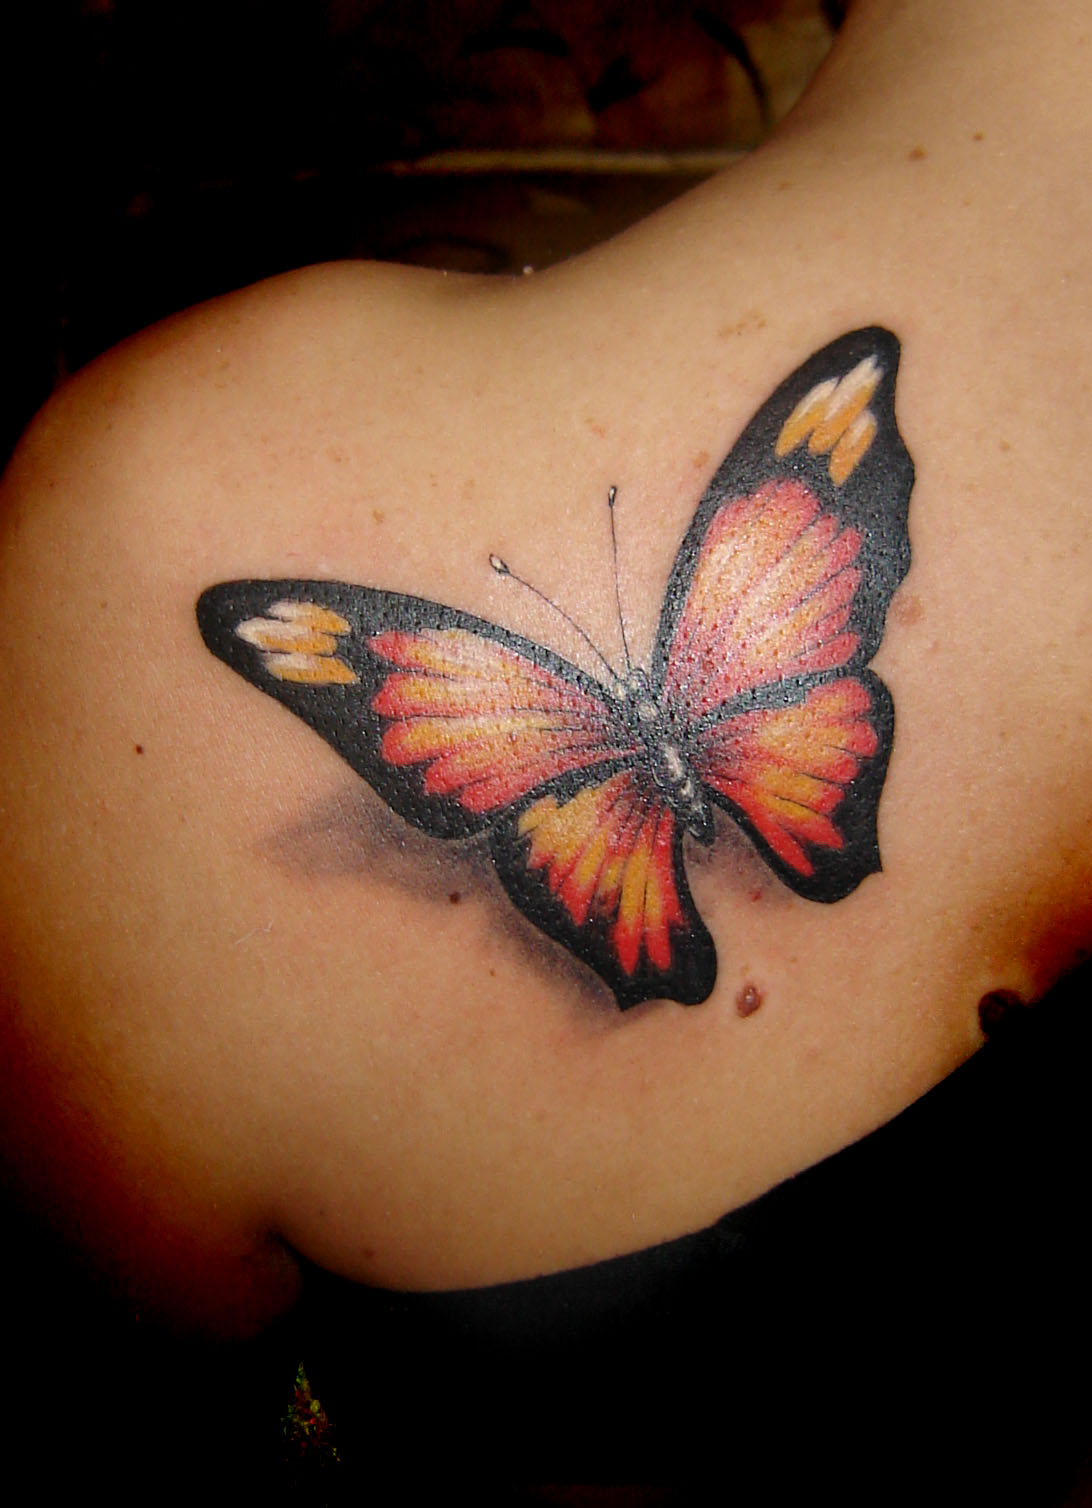 http://4.bp.blogspot.com/-Ho3_iFdy8Rs/Toej4Y4OhjI/AAAAAAAADEA/uU6fkNz28I8/s1600/Butterfly-Tattoo-Design.jpg